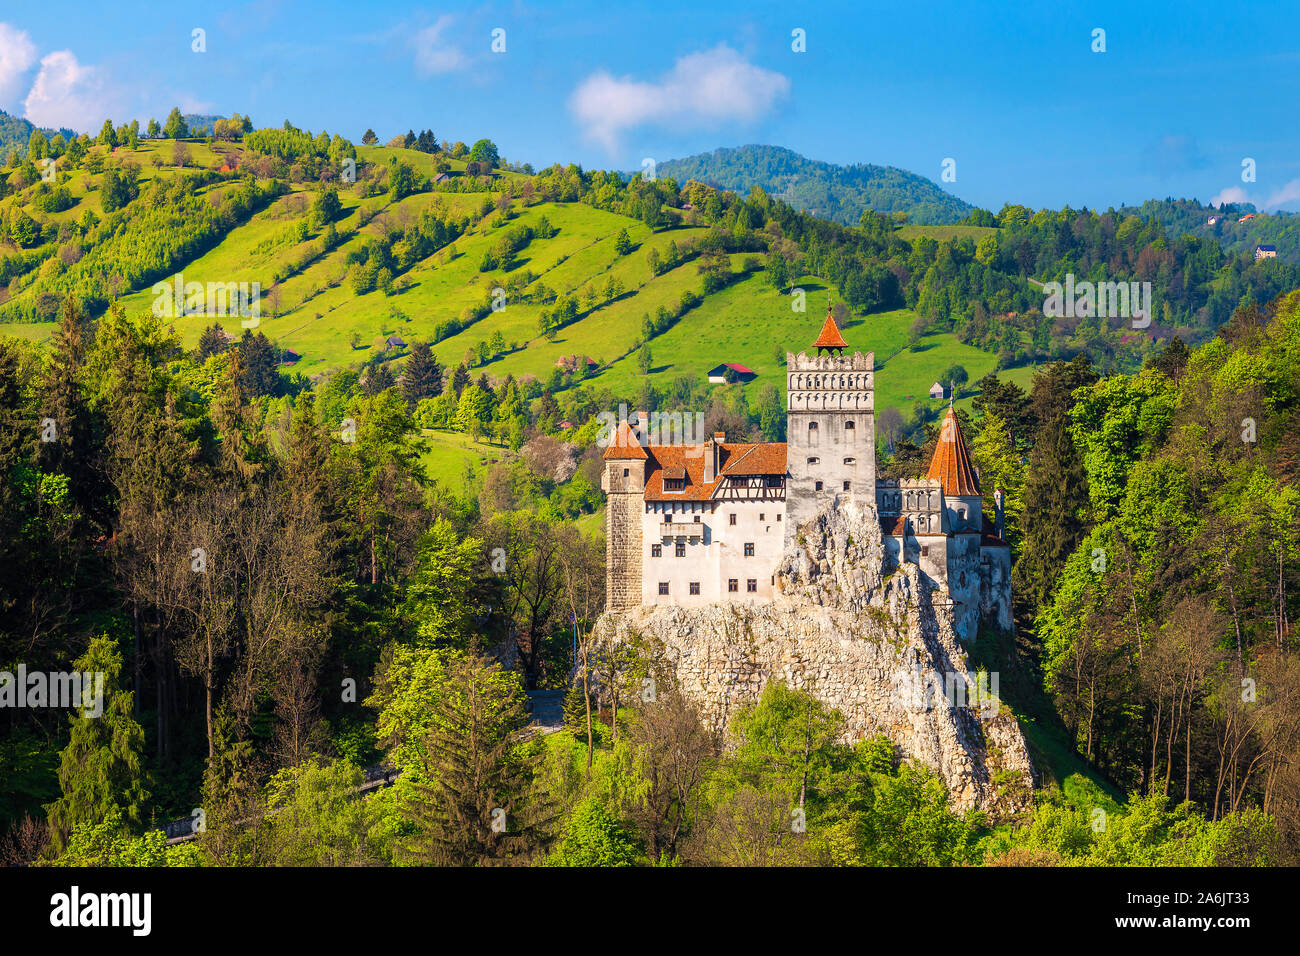 Situation touristique de Transylvanie populaires avec le célèbre château de Bran et pittoresque paysage rural au printemps, Roumanie, Europe Banque D'Images